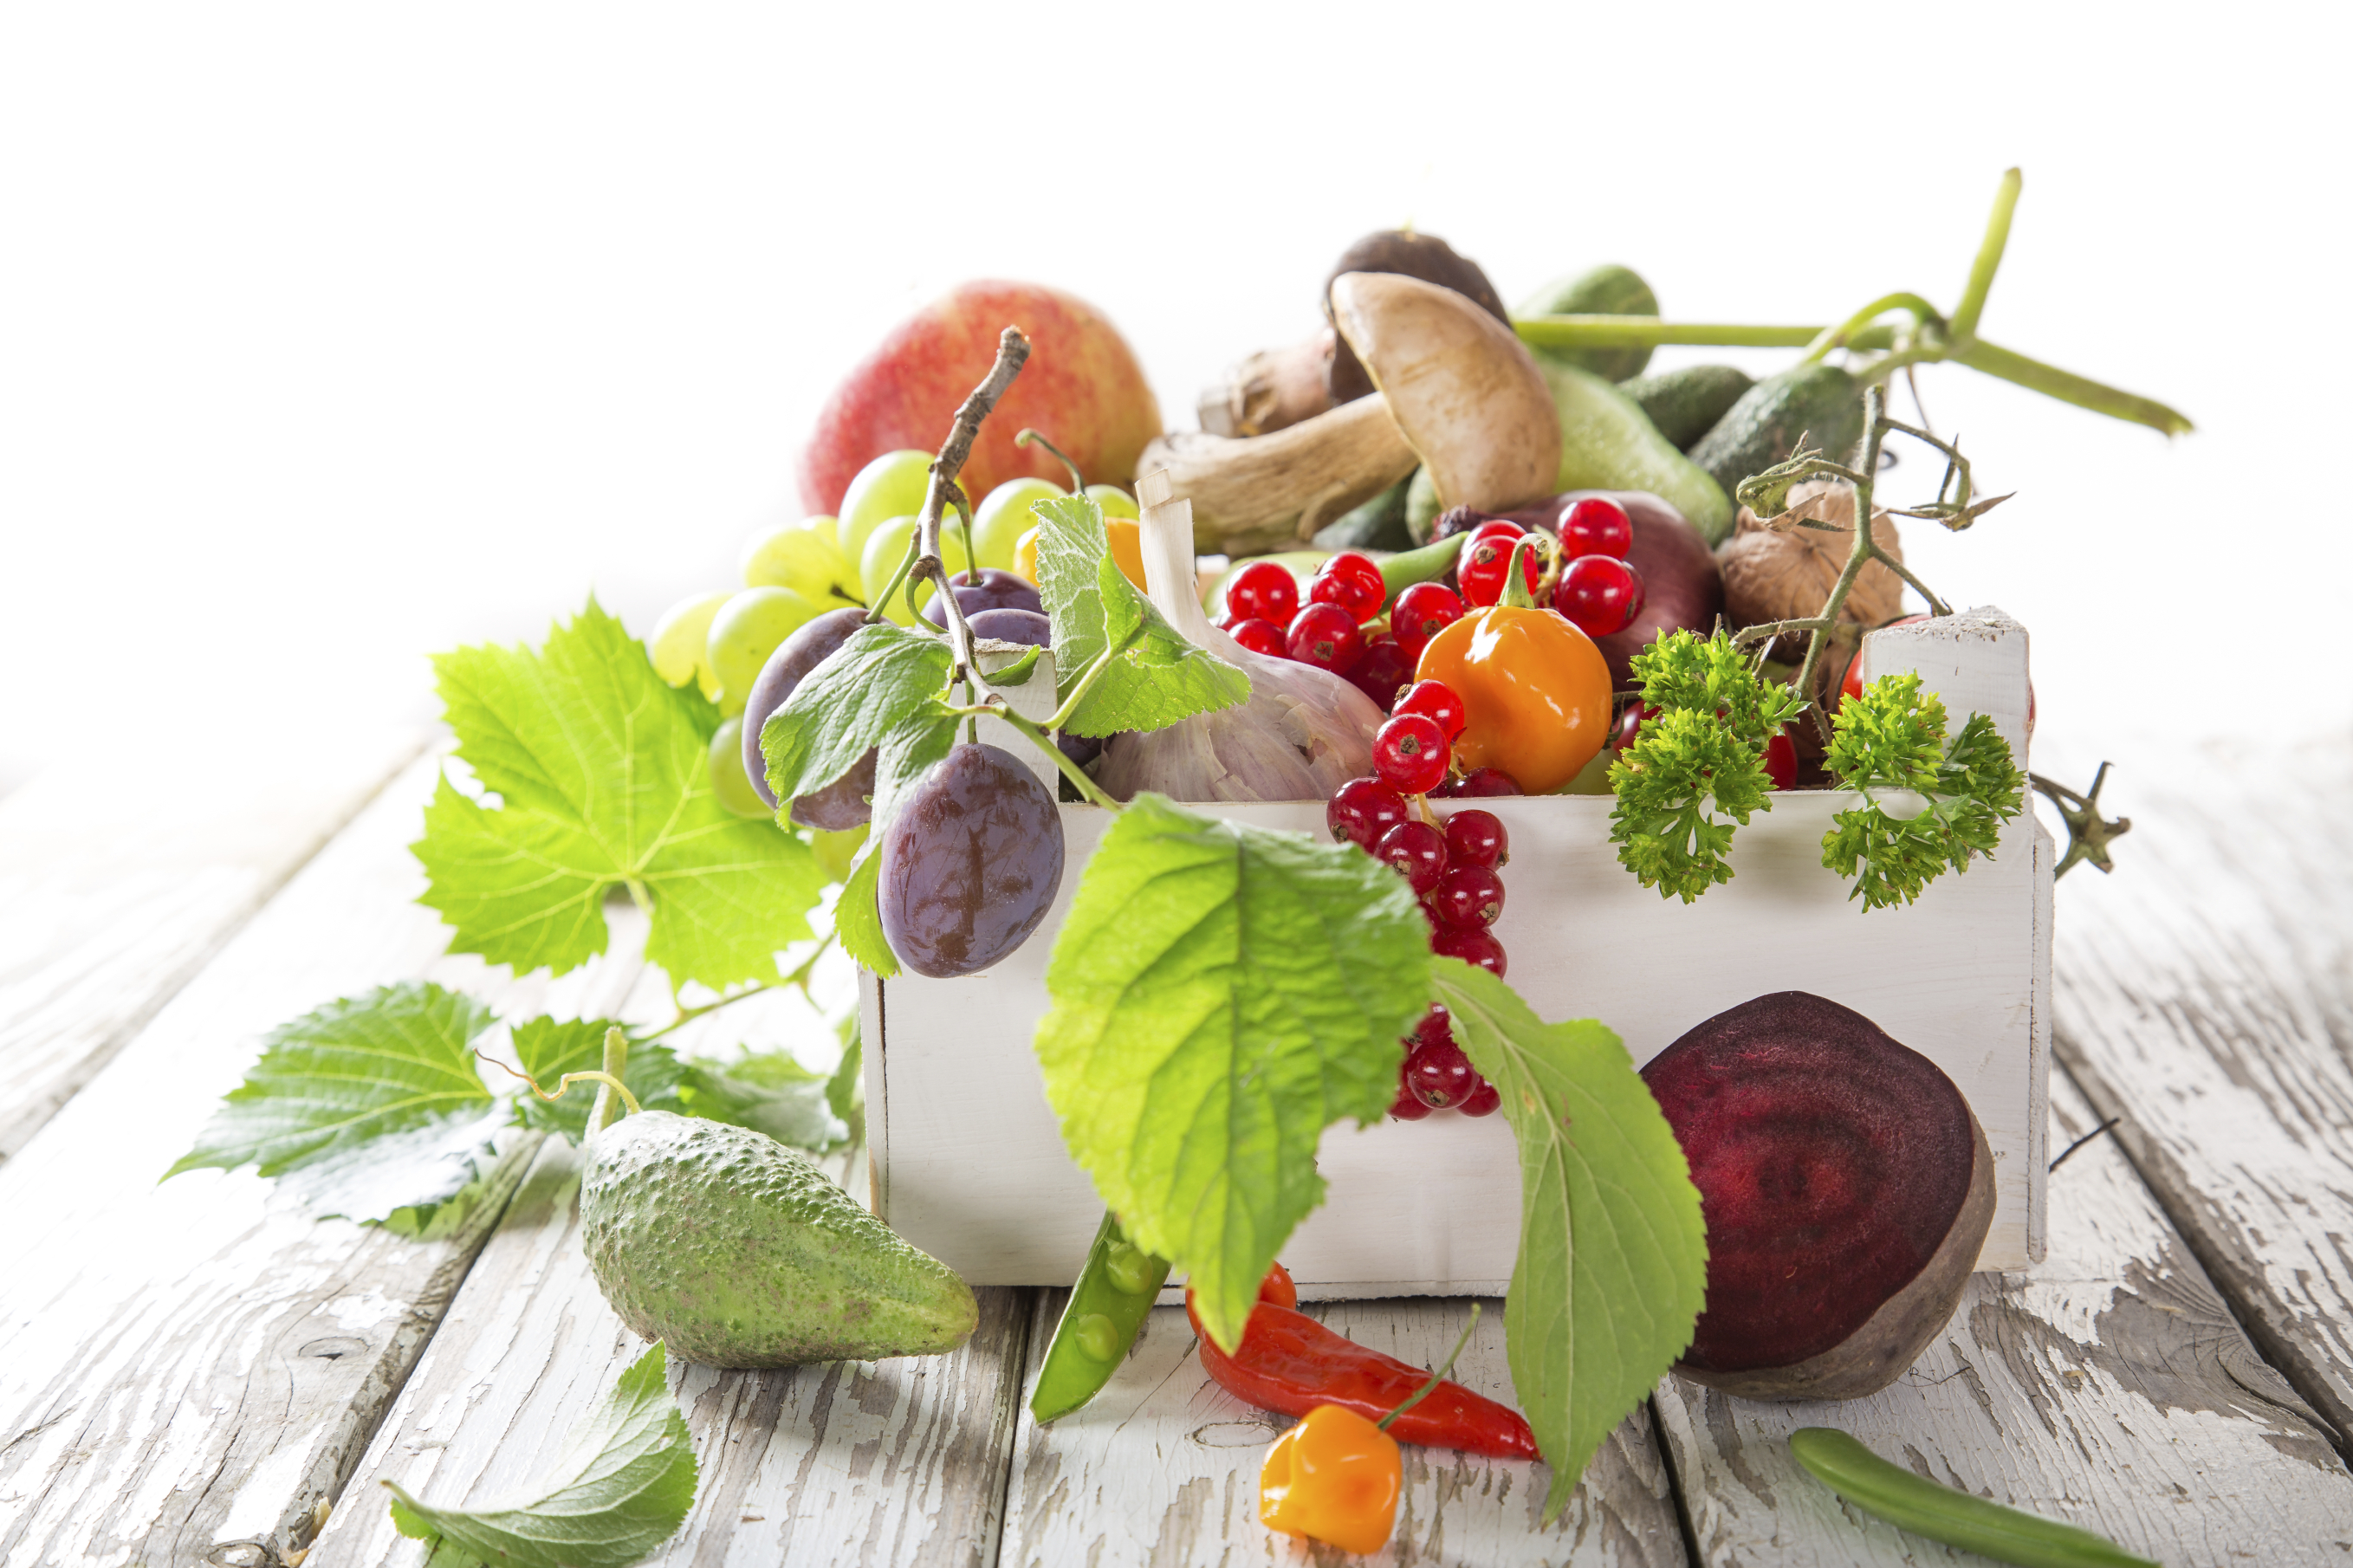 Masse forskjellige frukt og grønnsaker ligger på treunderlag.